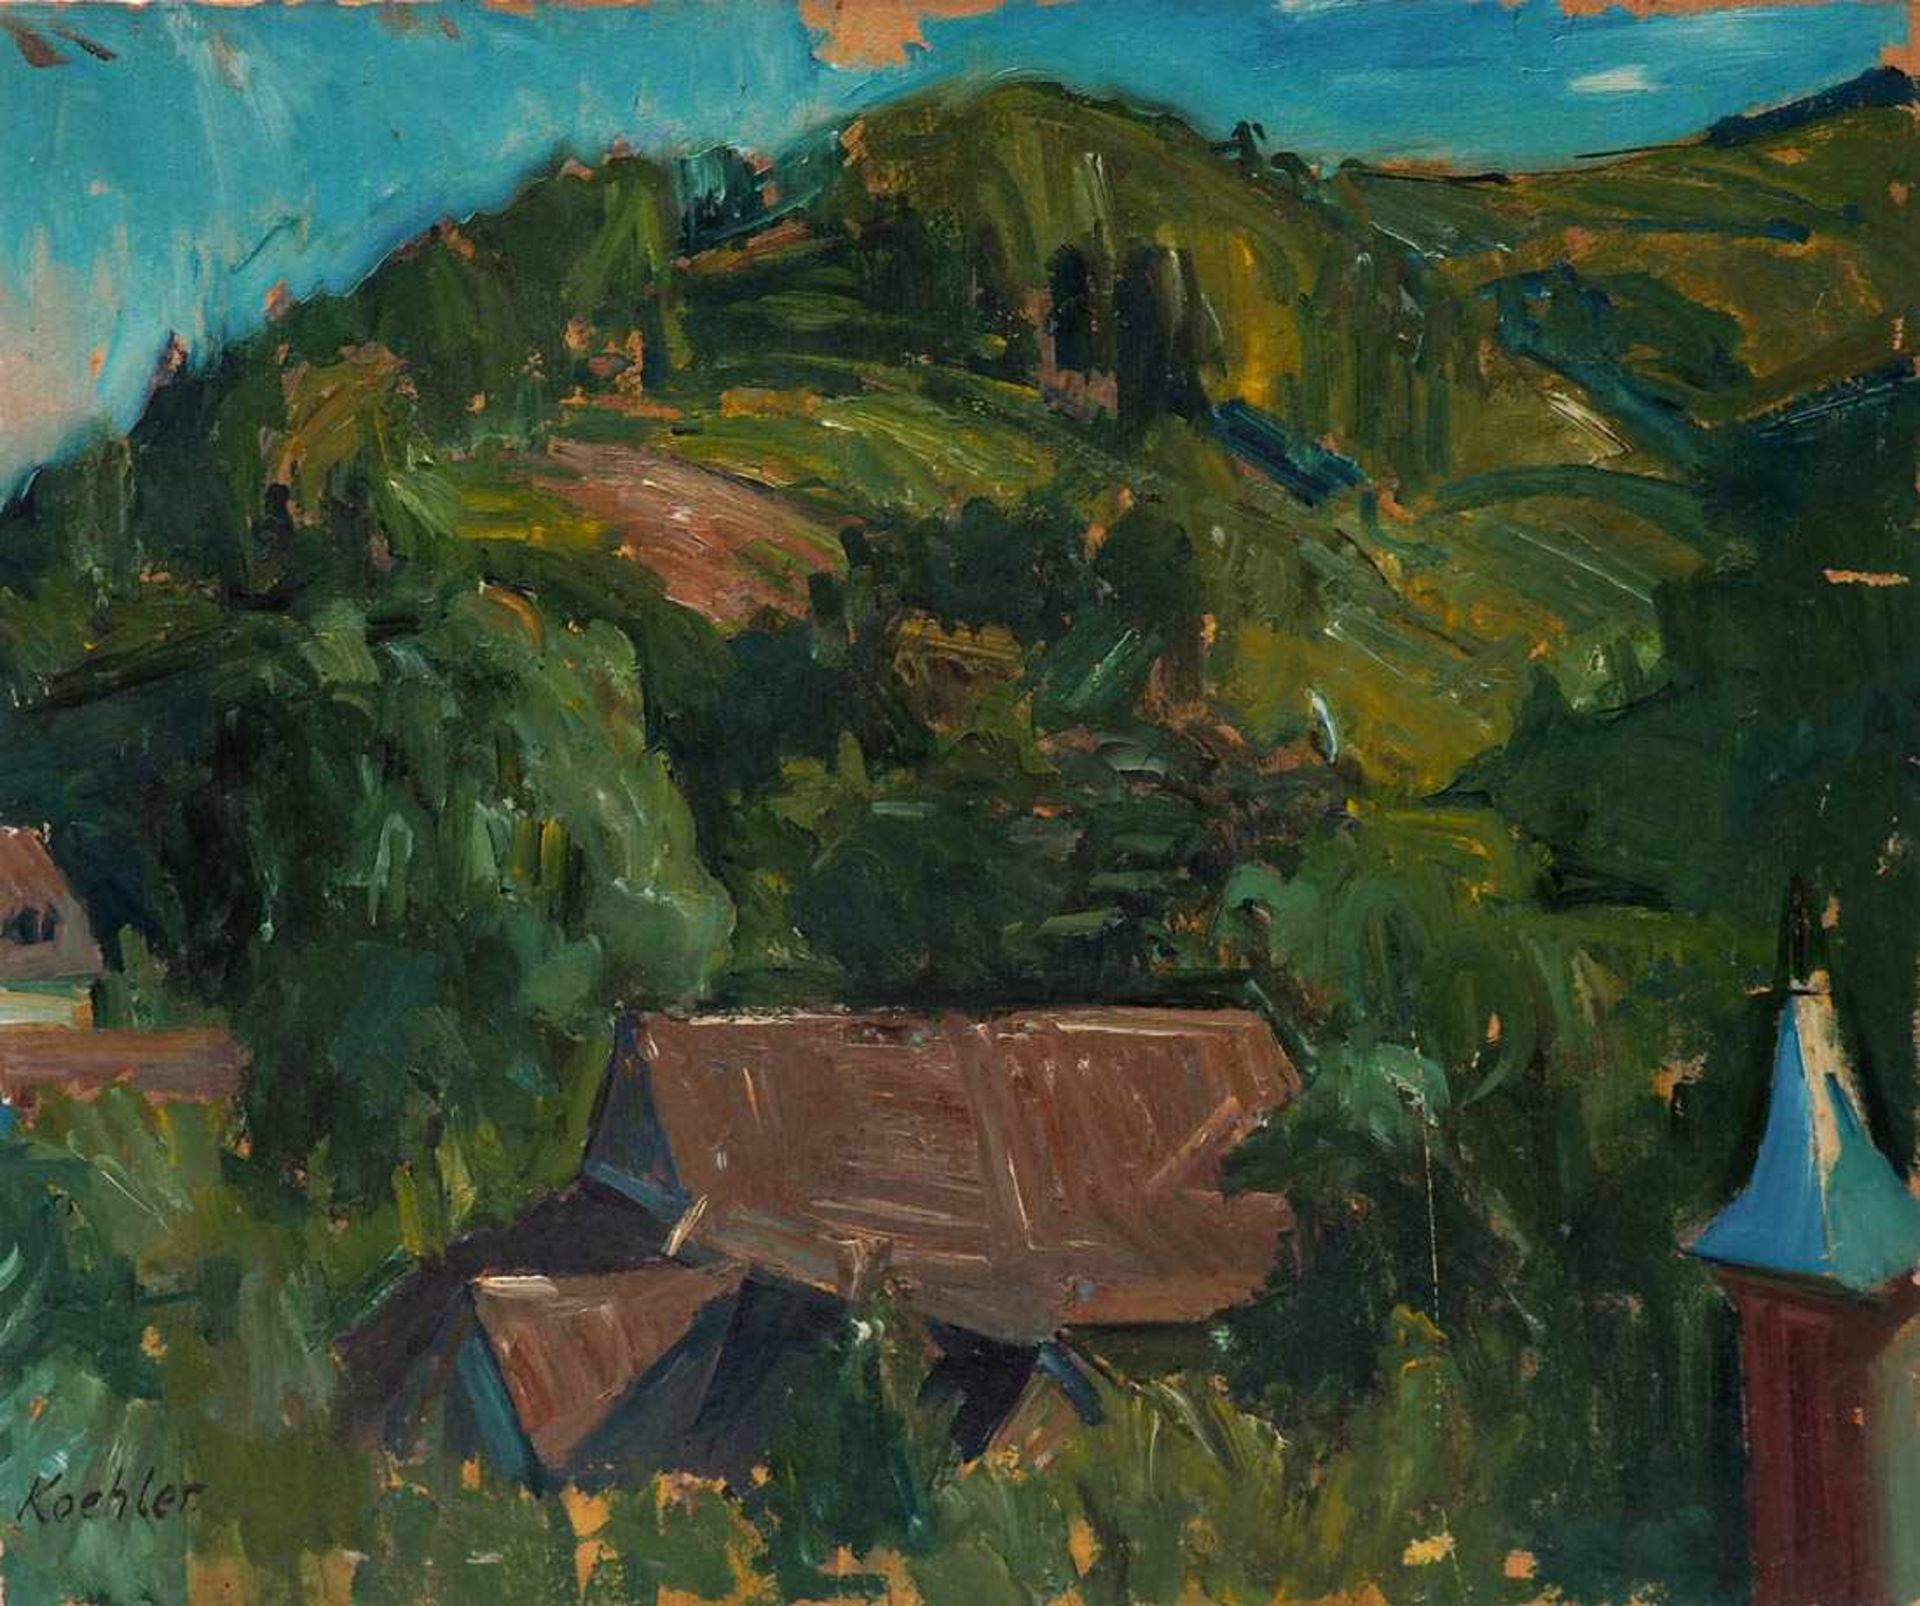 Köhler, Hendrik, 1893 - 1975 Ölstudie mit den Häusern in Günterstal zwischen dicht belaubten Bäumen,